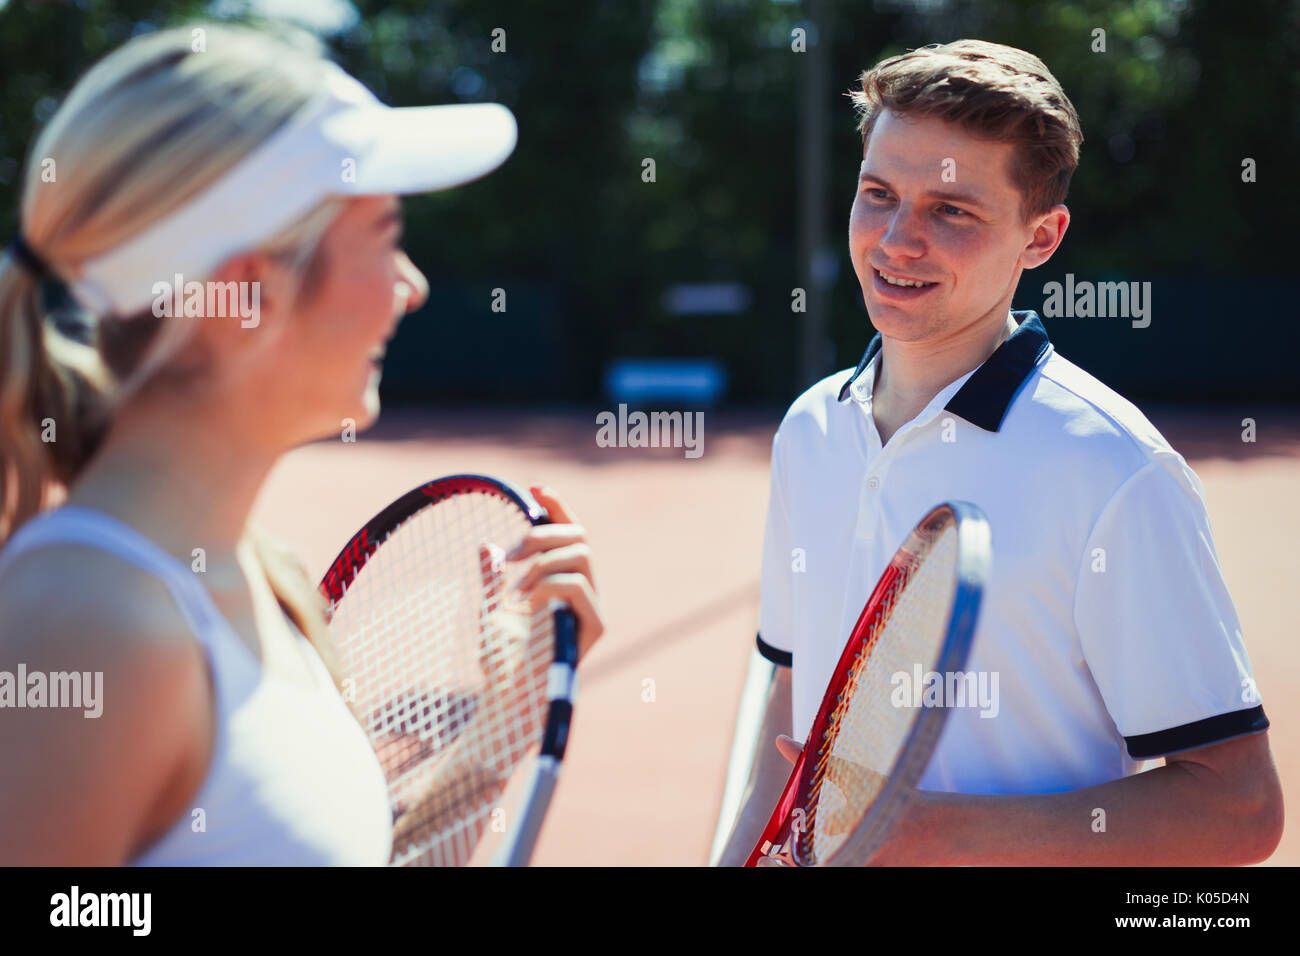 Les joueurs de tennis masculin et féminin, parler maintenant des raquettes de tennis Banque D'Images